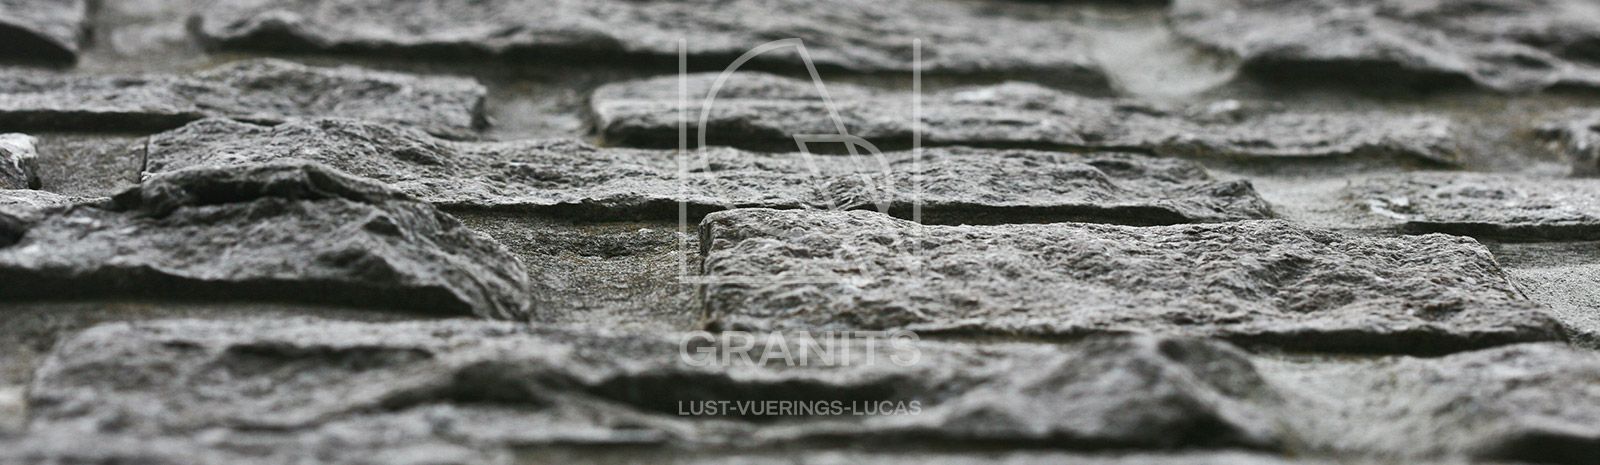 Granits Lust-Vuerings-Lucas - Granit Lust-Vuerings - Blauwe Steen